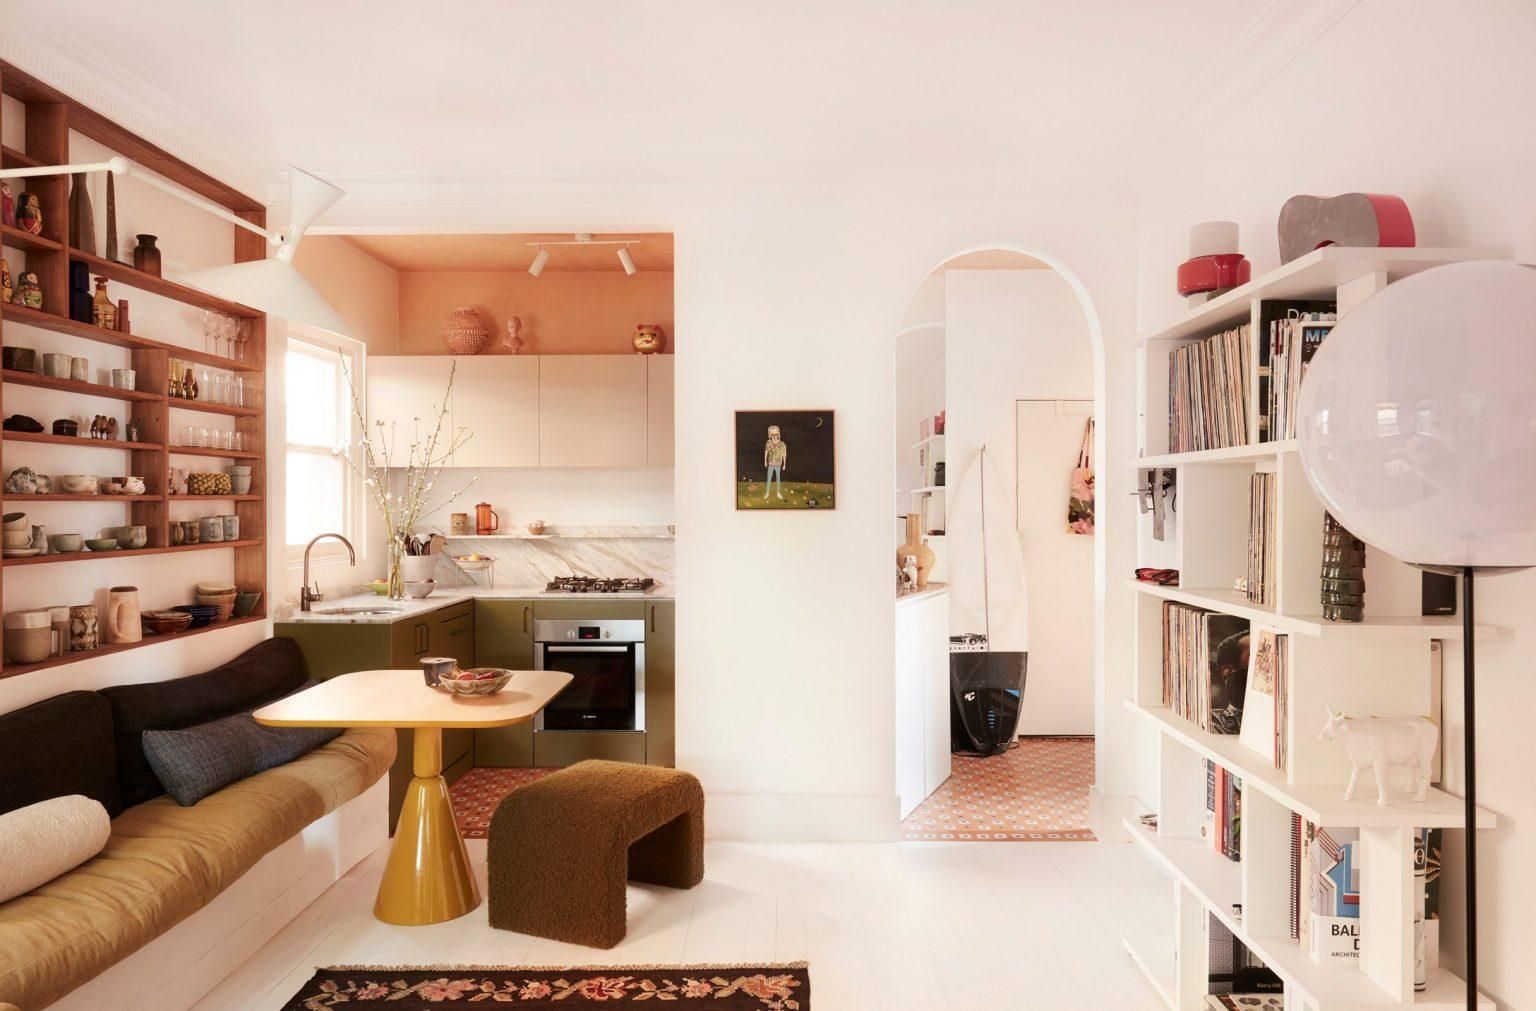 Эклектика в квартире, площадью 55 квадратных метров: проект современного дома в Австралии